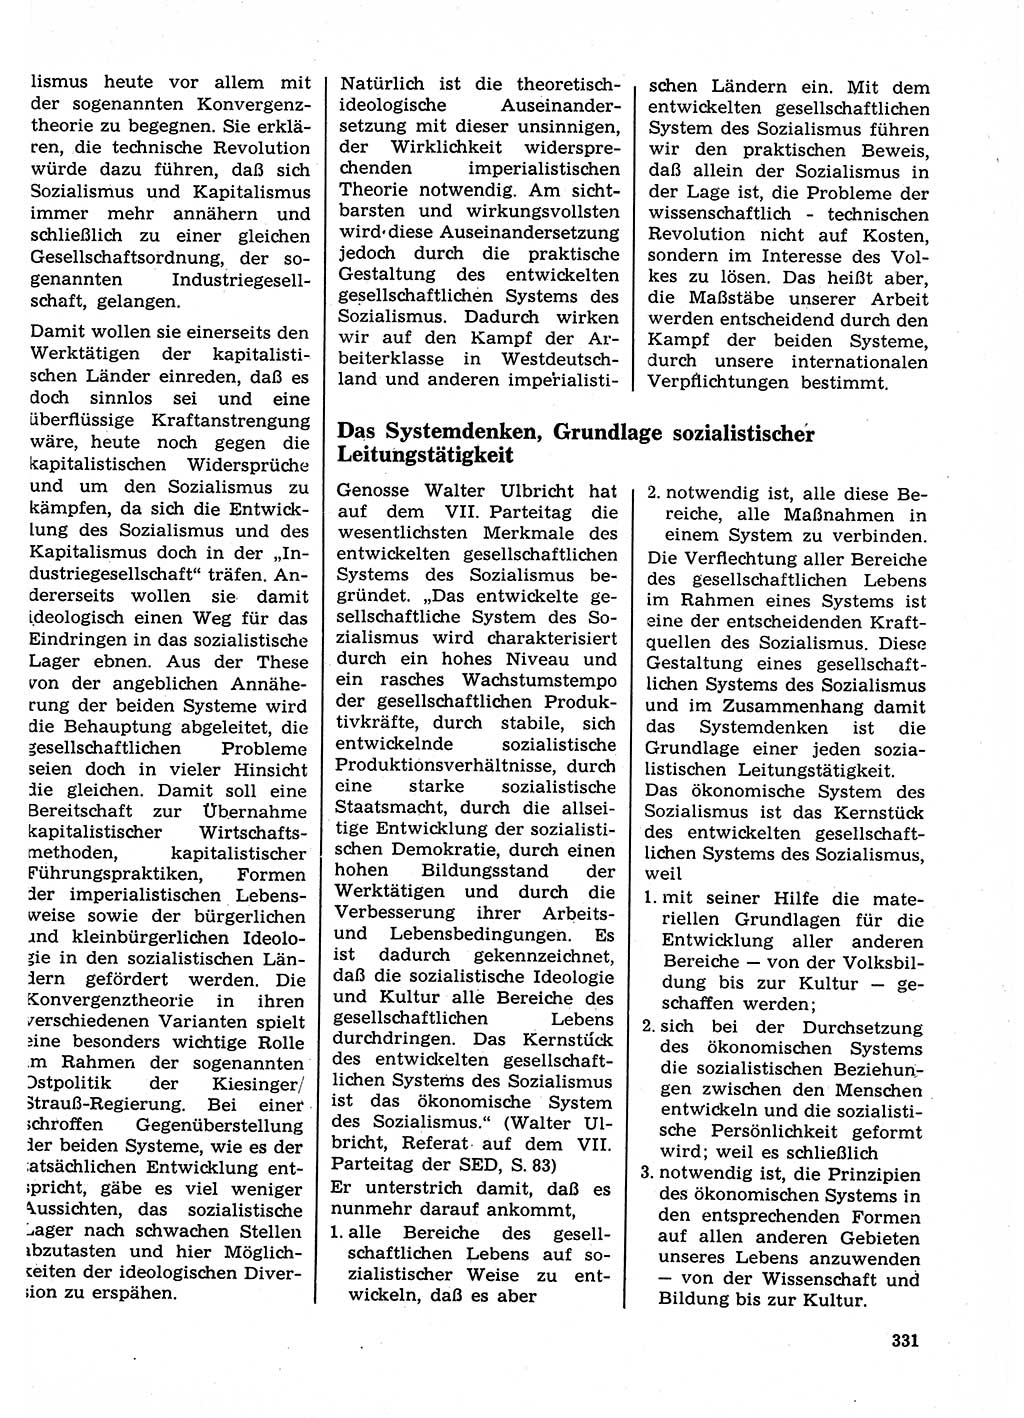 Neuer Weg (NW), Organ des Zentralkomitees (ZK) der SED (Sozialistische Einheitspartei Deutschlands) für Fragen des Parteilebens, 23. Jahrgang [Deutsche Demokratische Republik (DDR)] 1968, Seite 331 (NW ZK SED DDR 1968, S. 331)